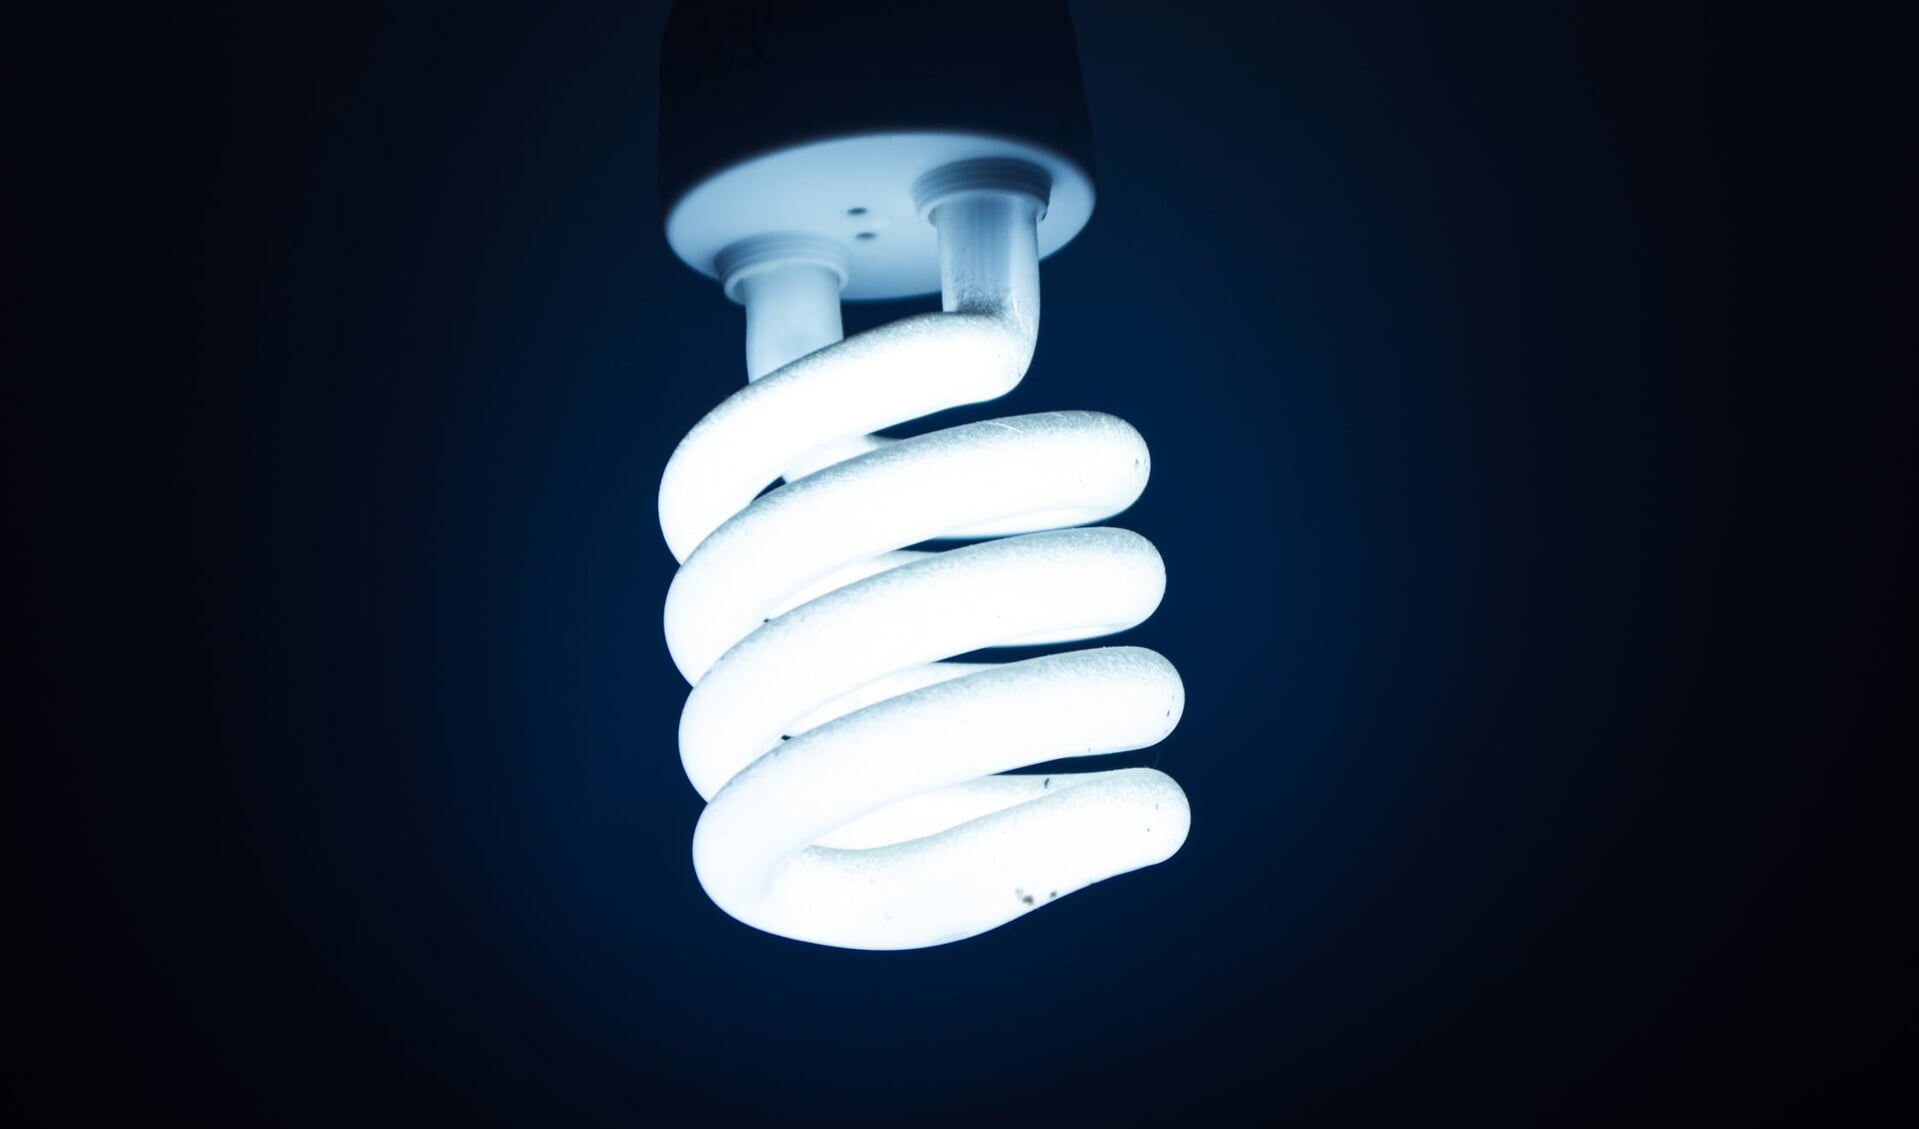 Wat zijn de en nadelen LED stripverlichting? - DeWoudenberger.nl | Nieuws uit de regio Woudenberg